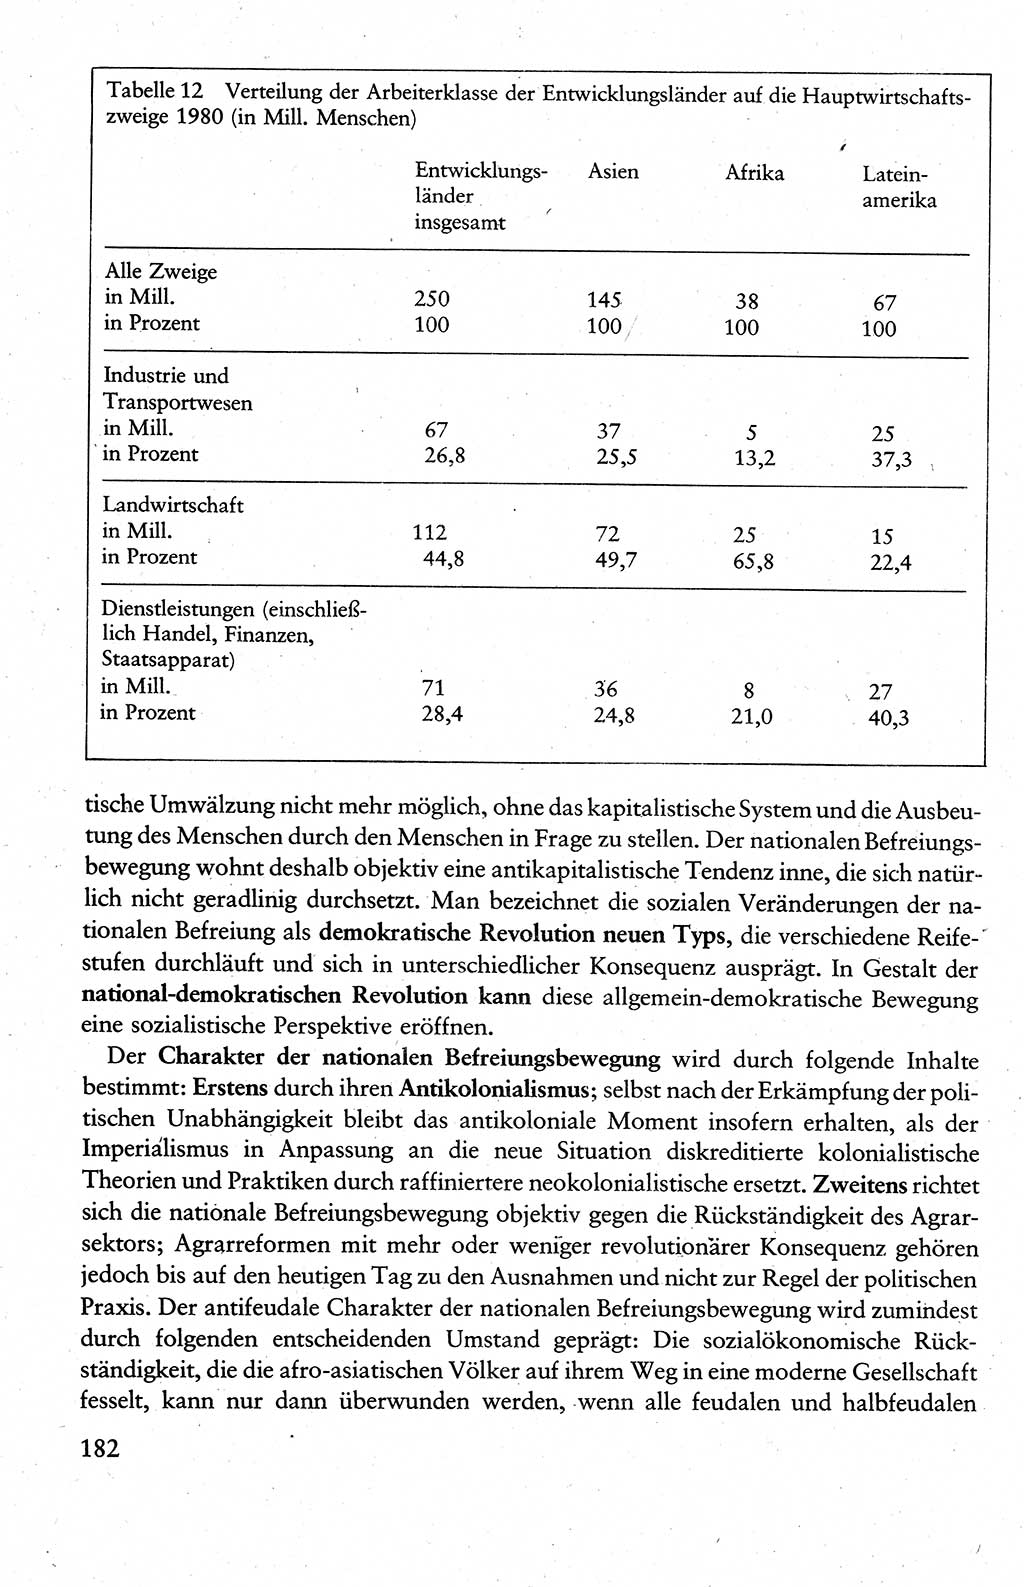 Wissenschaftlicher Kommunismus [Deutsche Demokratische Republik (DDR)], Lehrbuch für das marxistisch-leninistische Grundlagenstudium 1983, Seite 182 (Wiss. Komm. DDR Lb. 1983, S. 182)